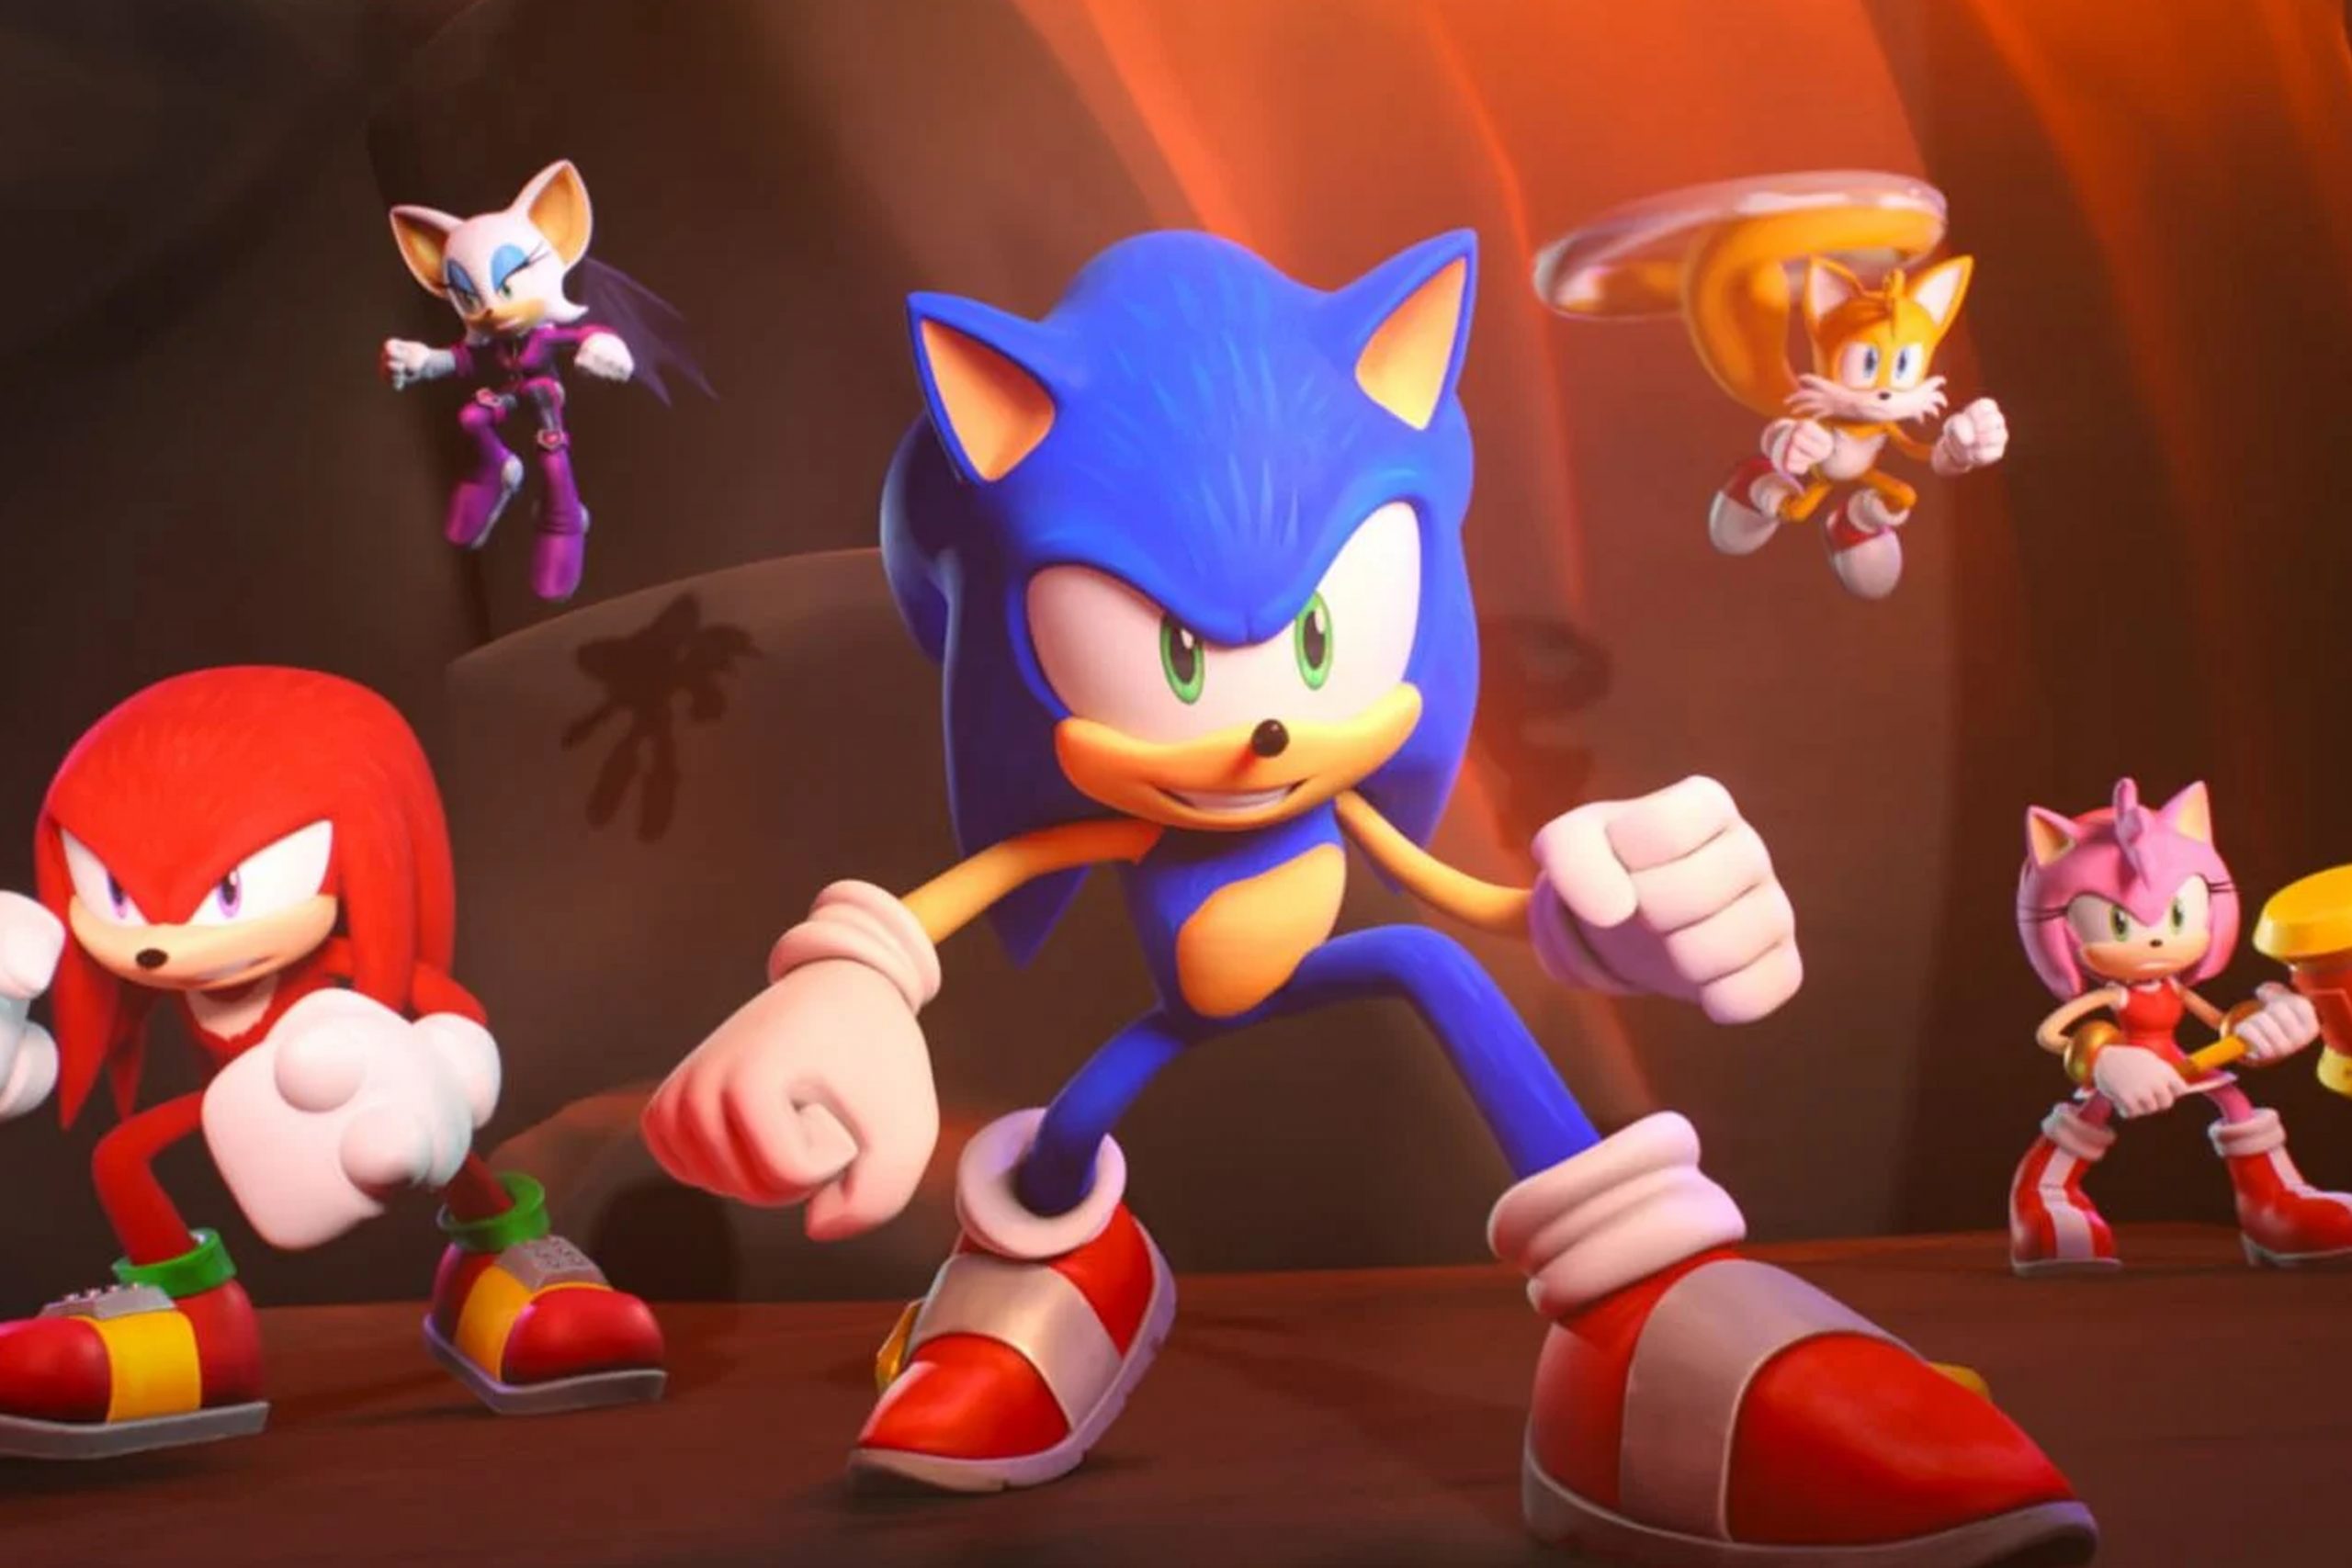  Espectacular: Sonic vuelve a la pantalla de Netflix